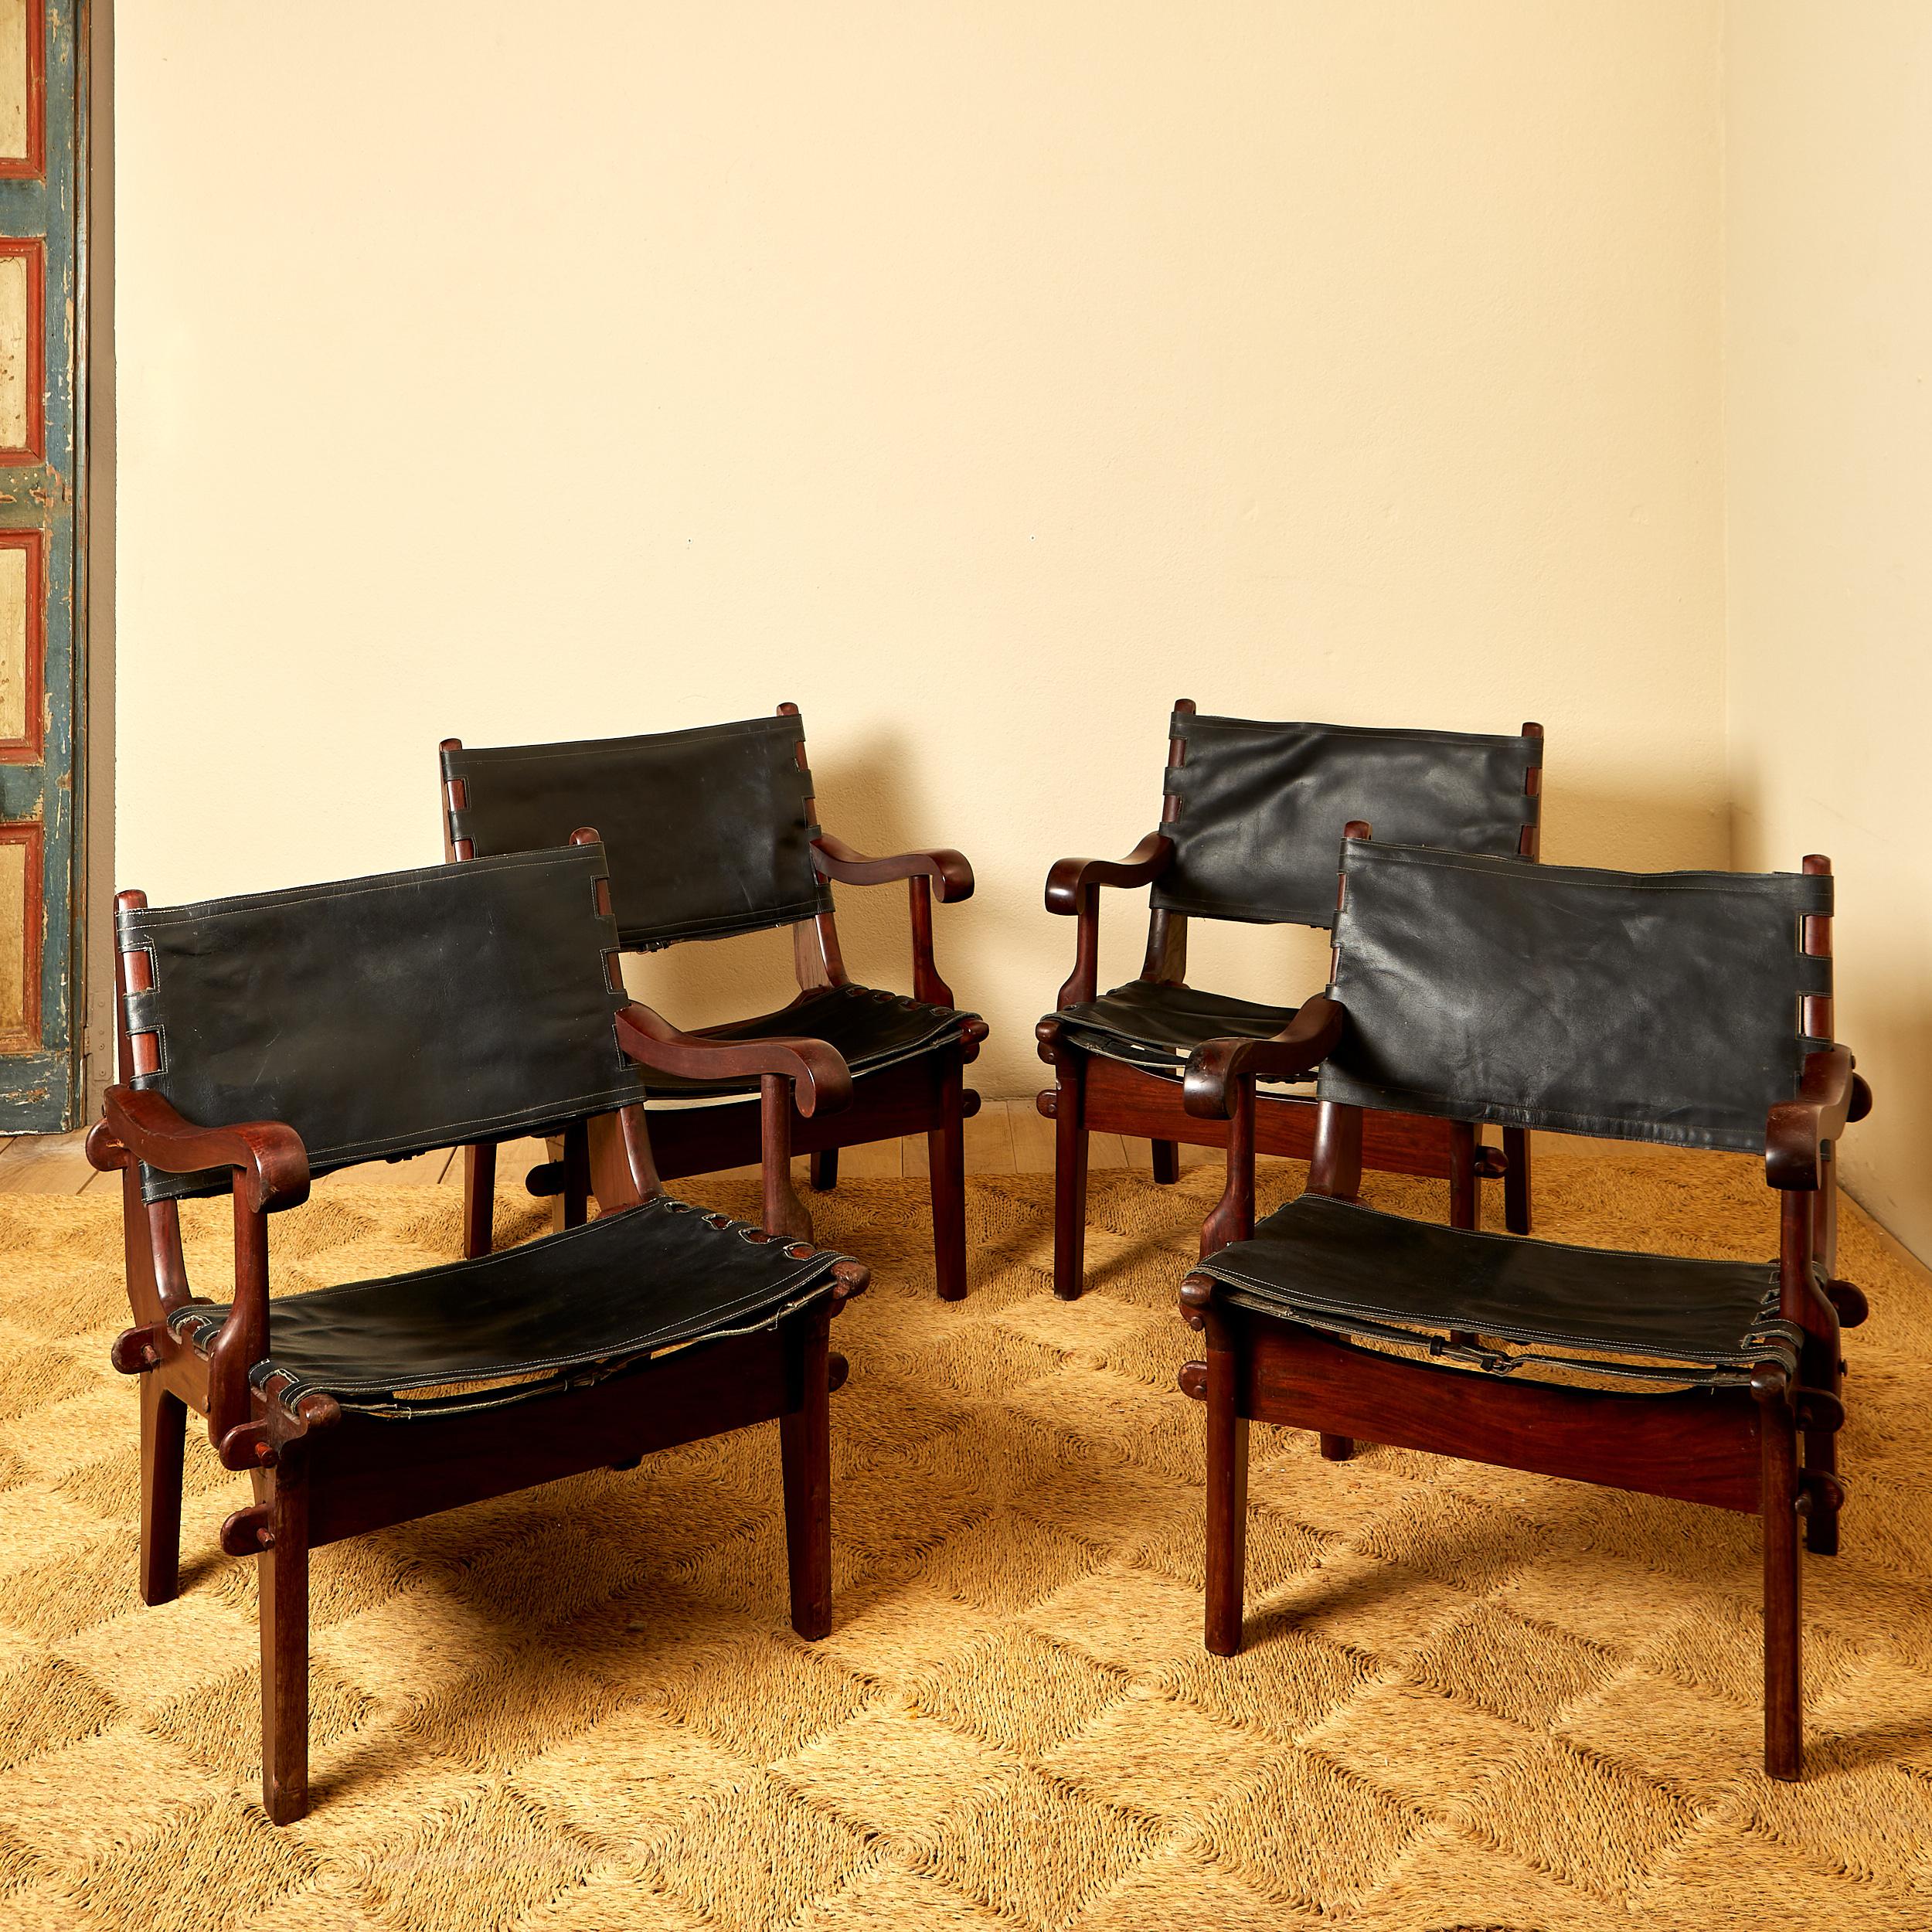 Angel Pazmino,
Suite de quatre fauteuils équatoriens,
cuir et bois,
circa 1960, Equateur.
Hauteur 77 cm, hauteur d'assise 42 cm, largeur 62 cm, profondeur 52 cm.